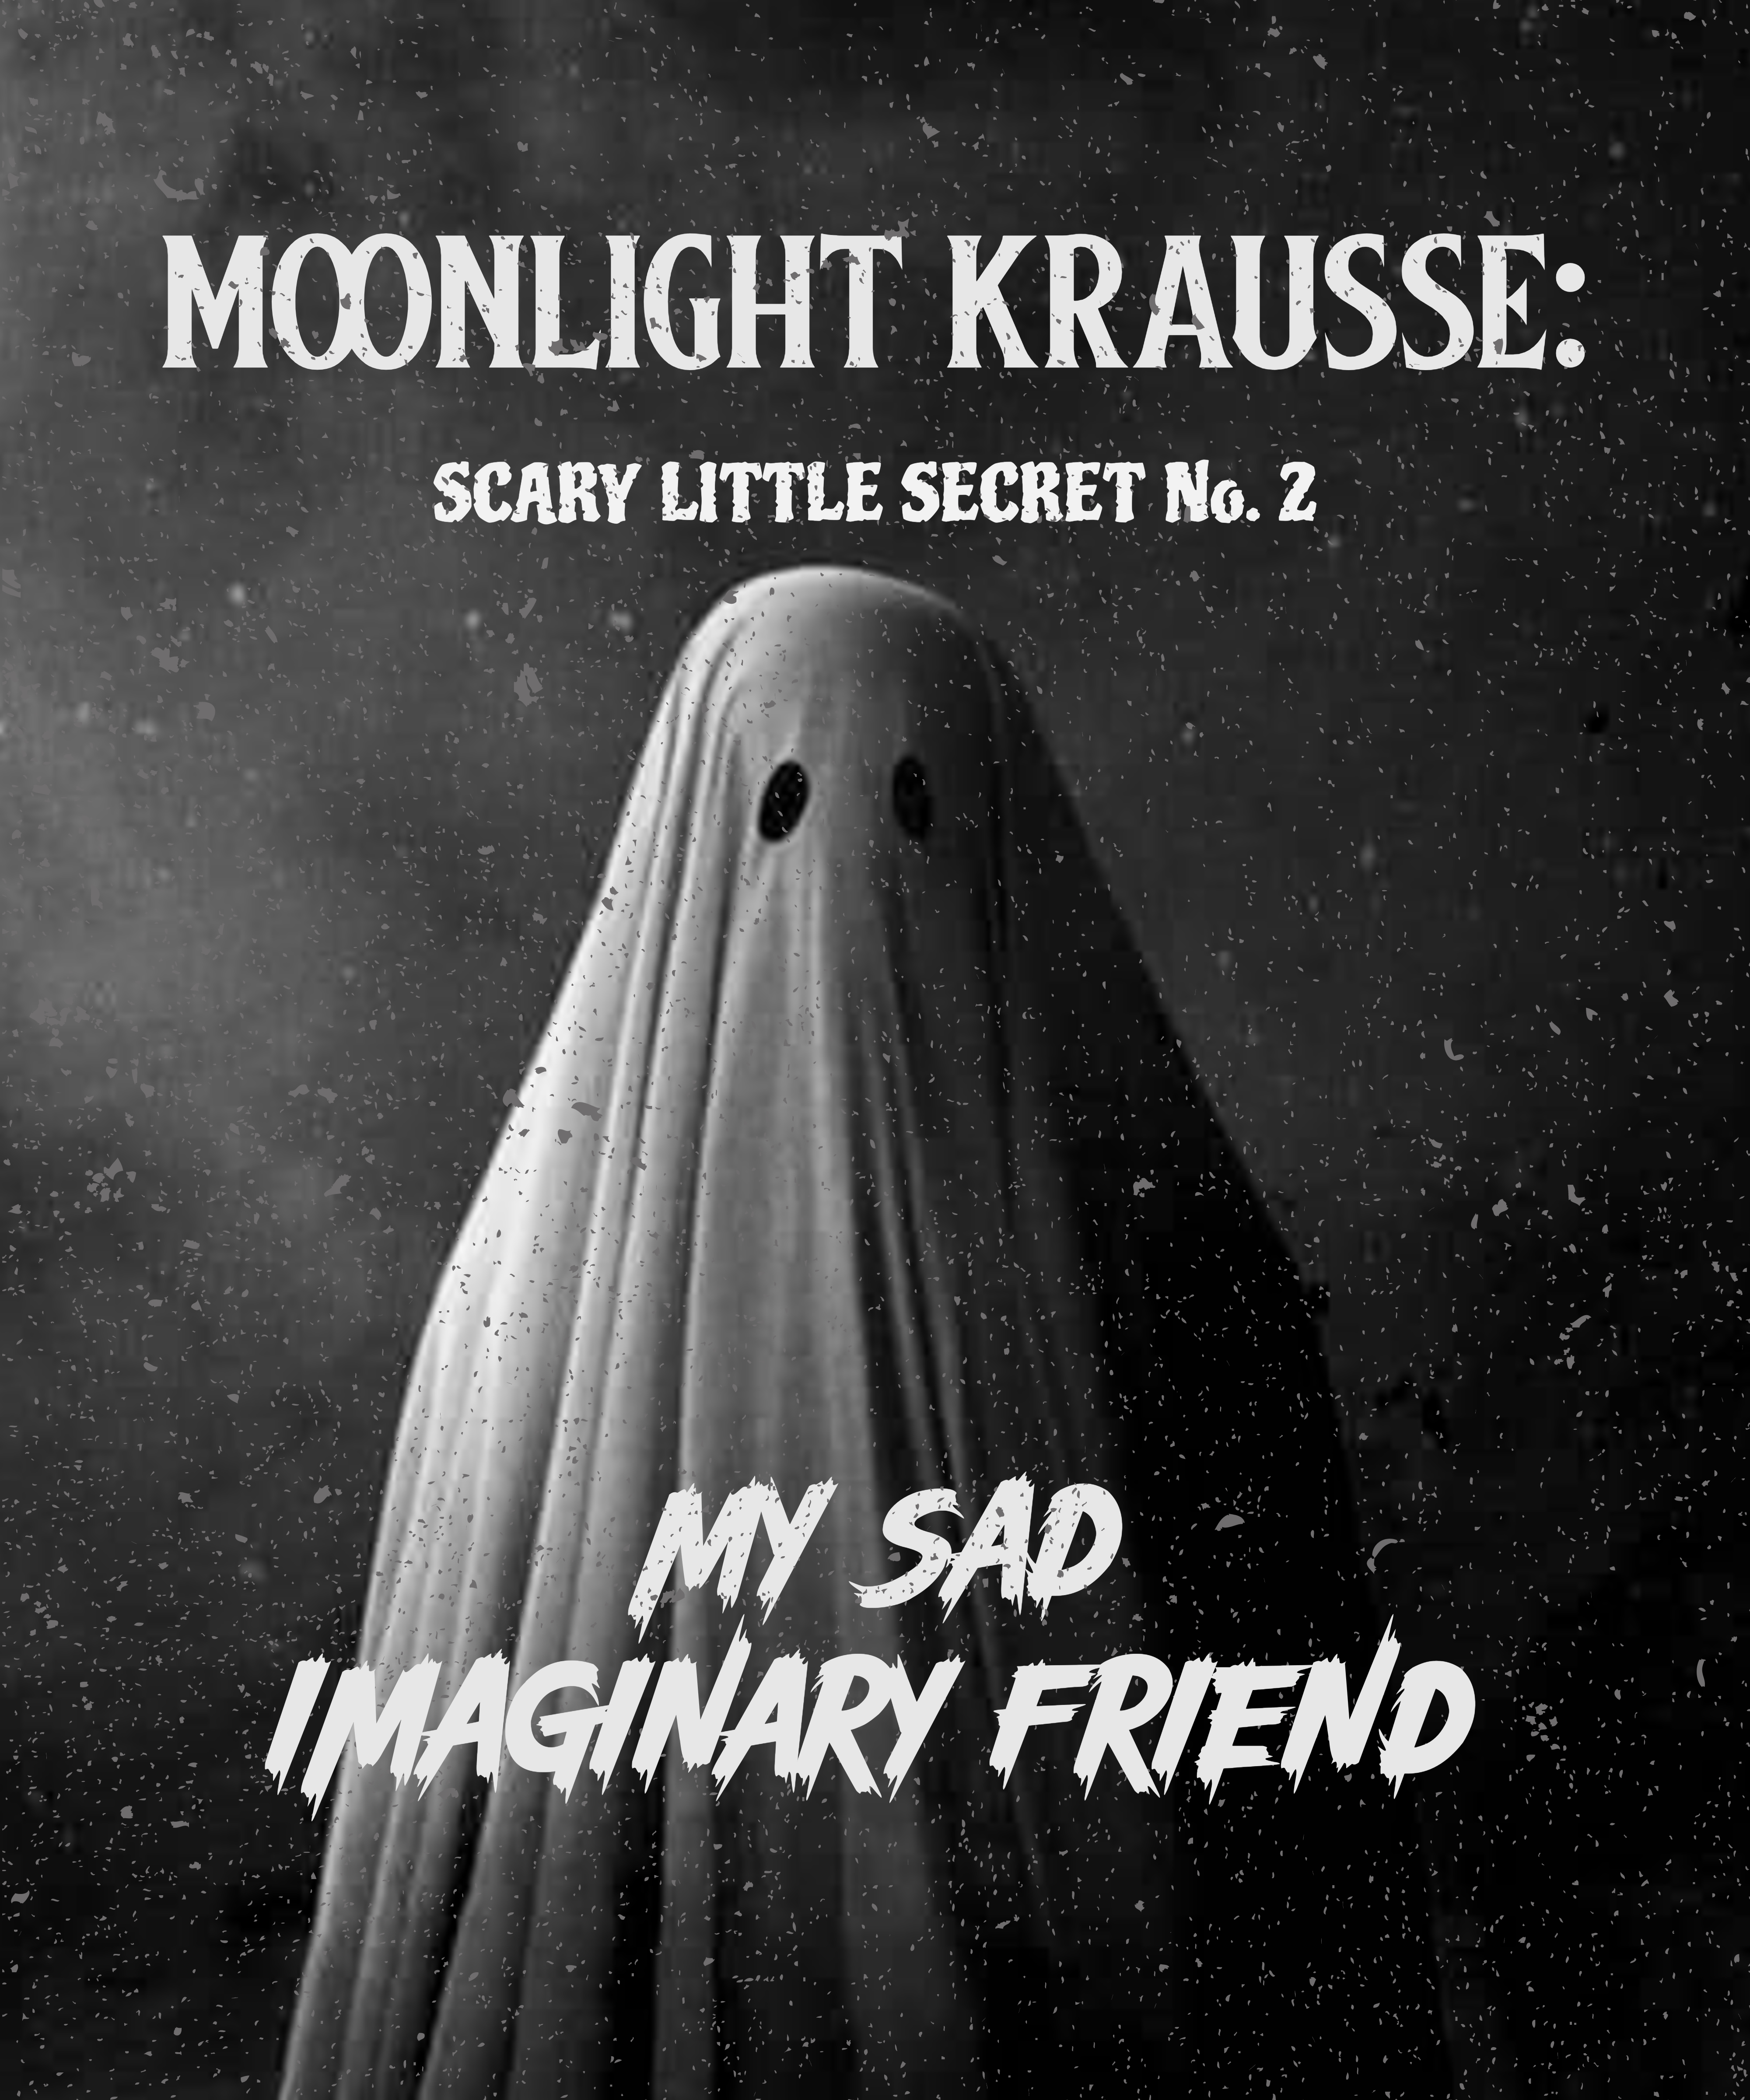 Scary Little Secrets - Moonlight Krausse Secret No. 2